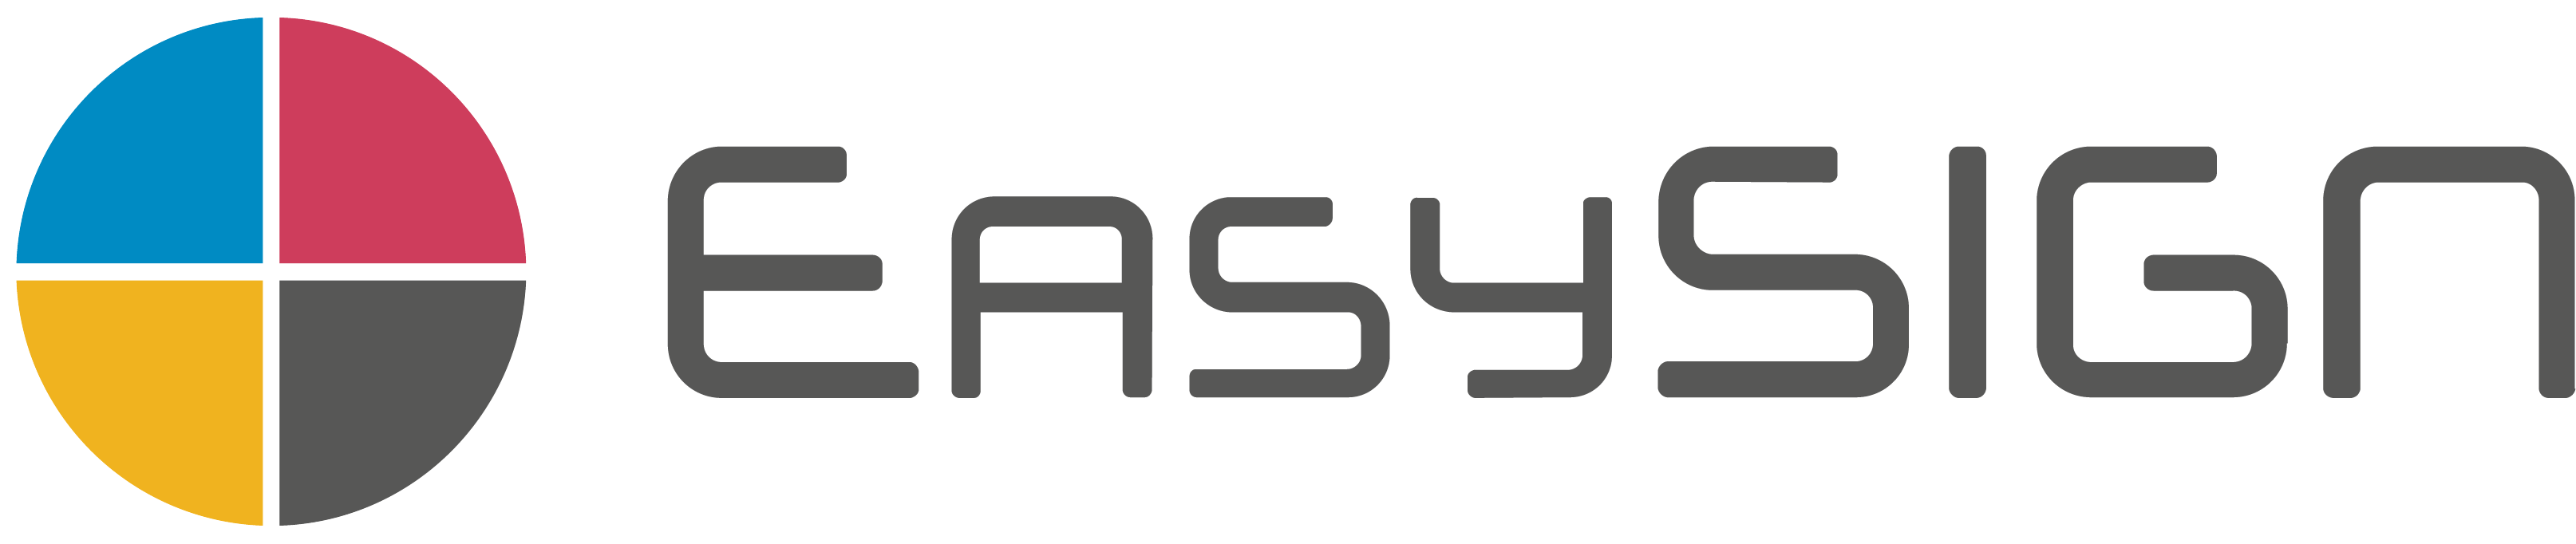 EasySIGN – Professionelle Grafik- und Folienschnittsoftware